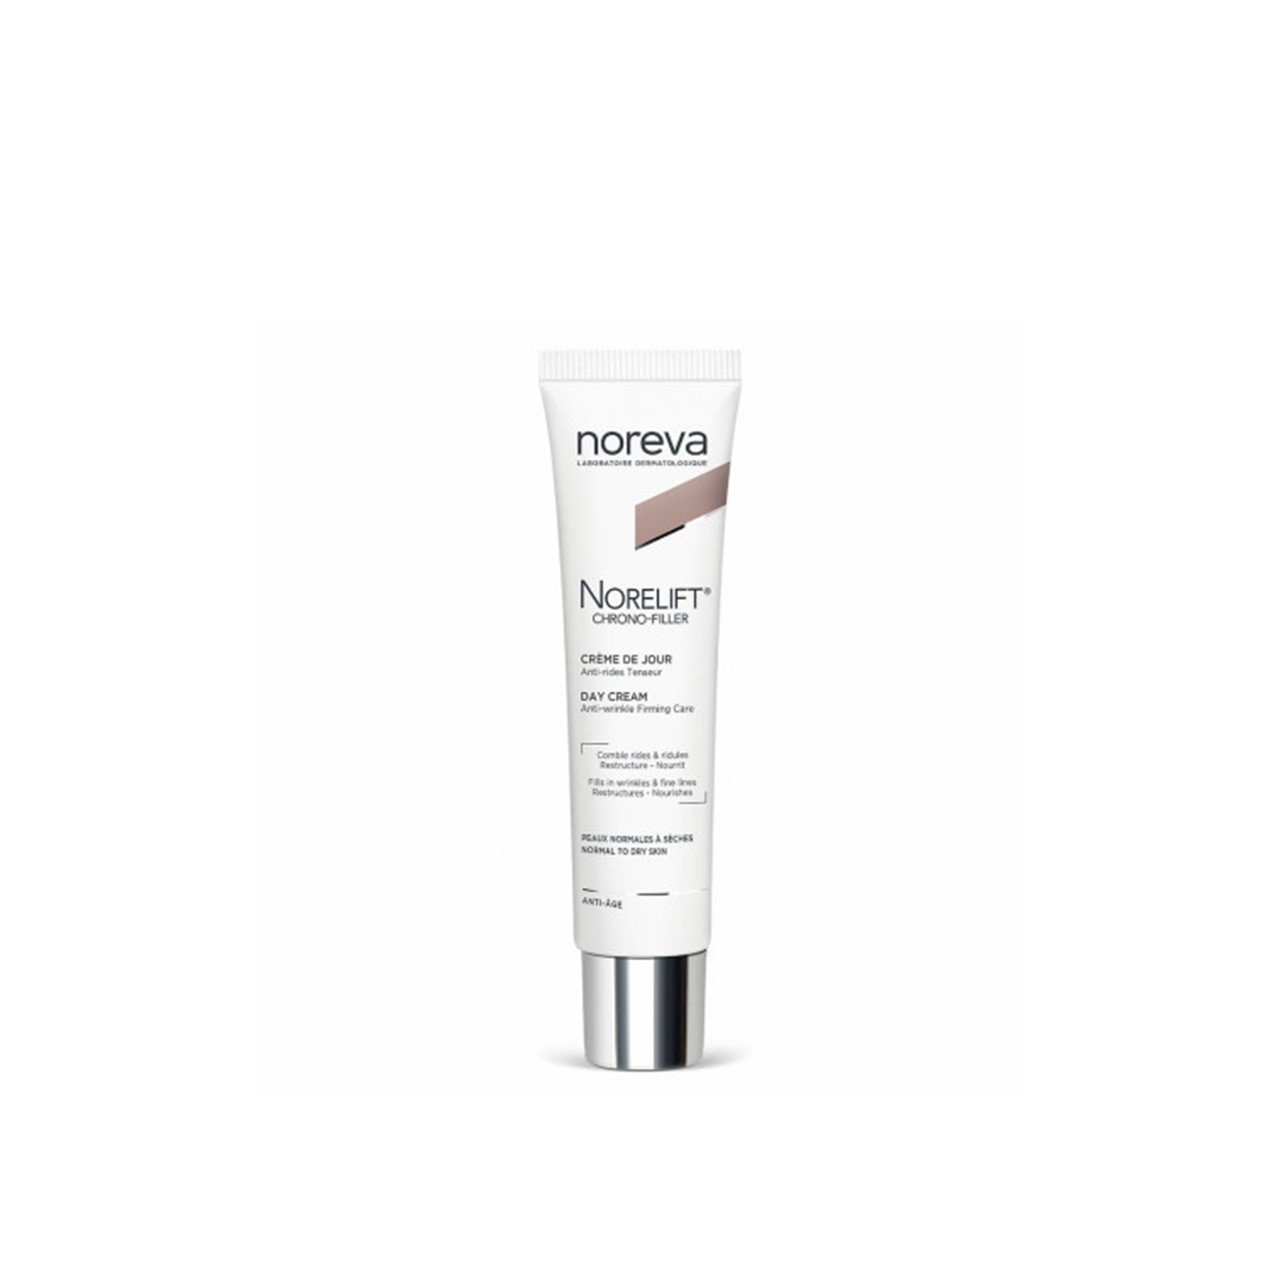 Noreva Norelift Chrono-Filler Day Cream 40ml (1.35fl oz)